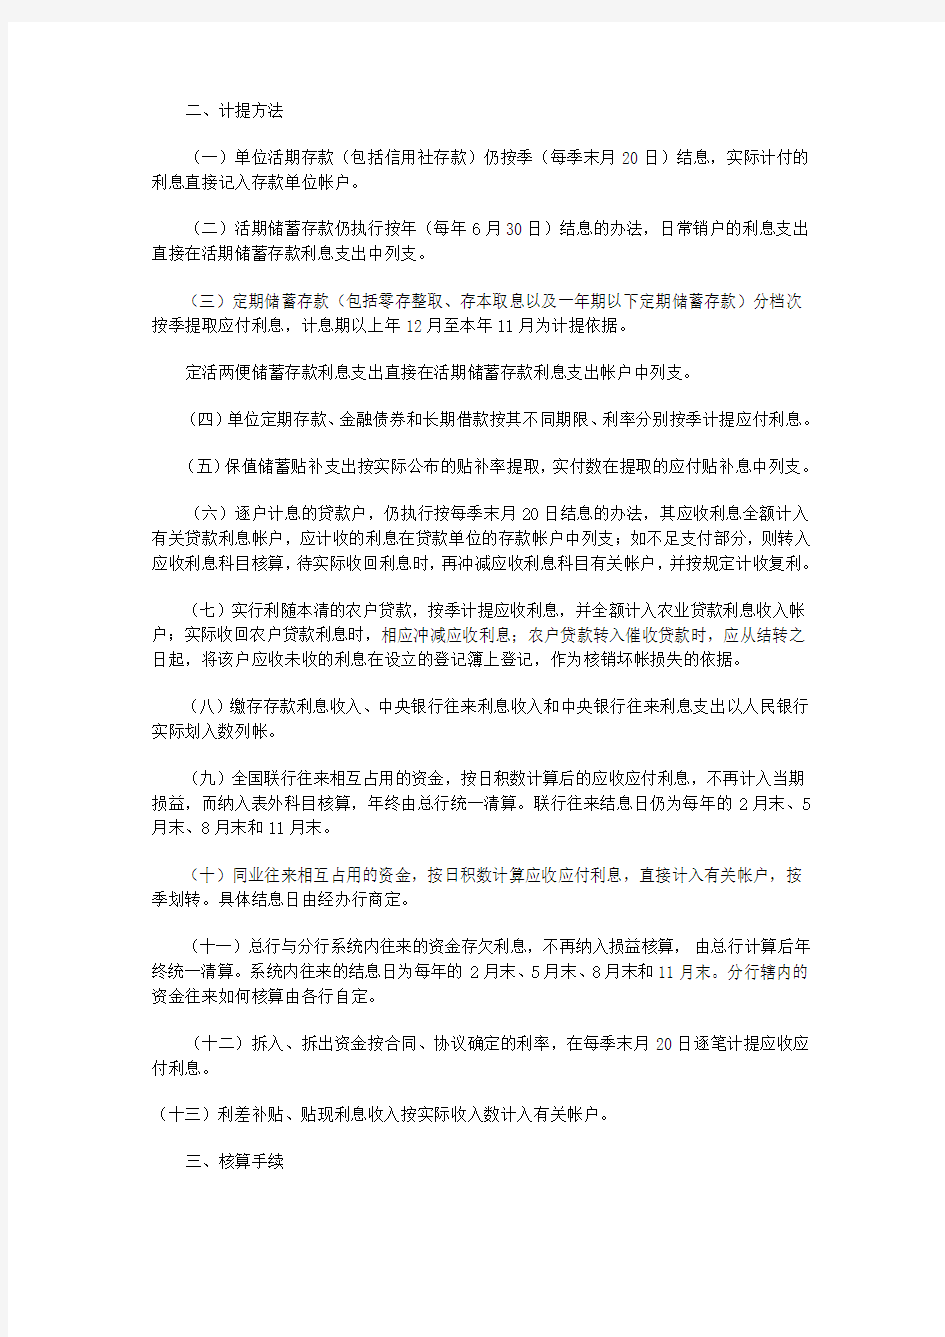 中国农业银行利息收支管理办法